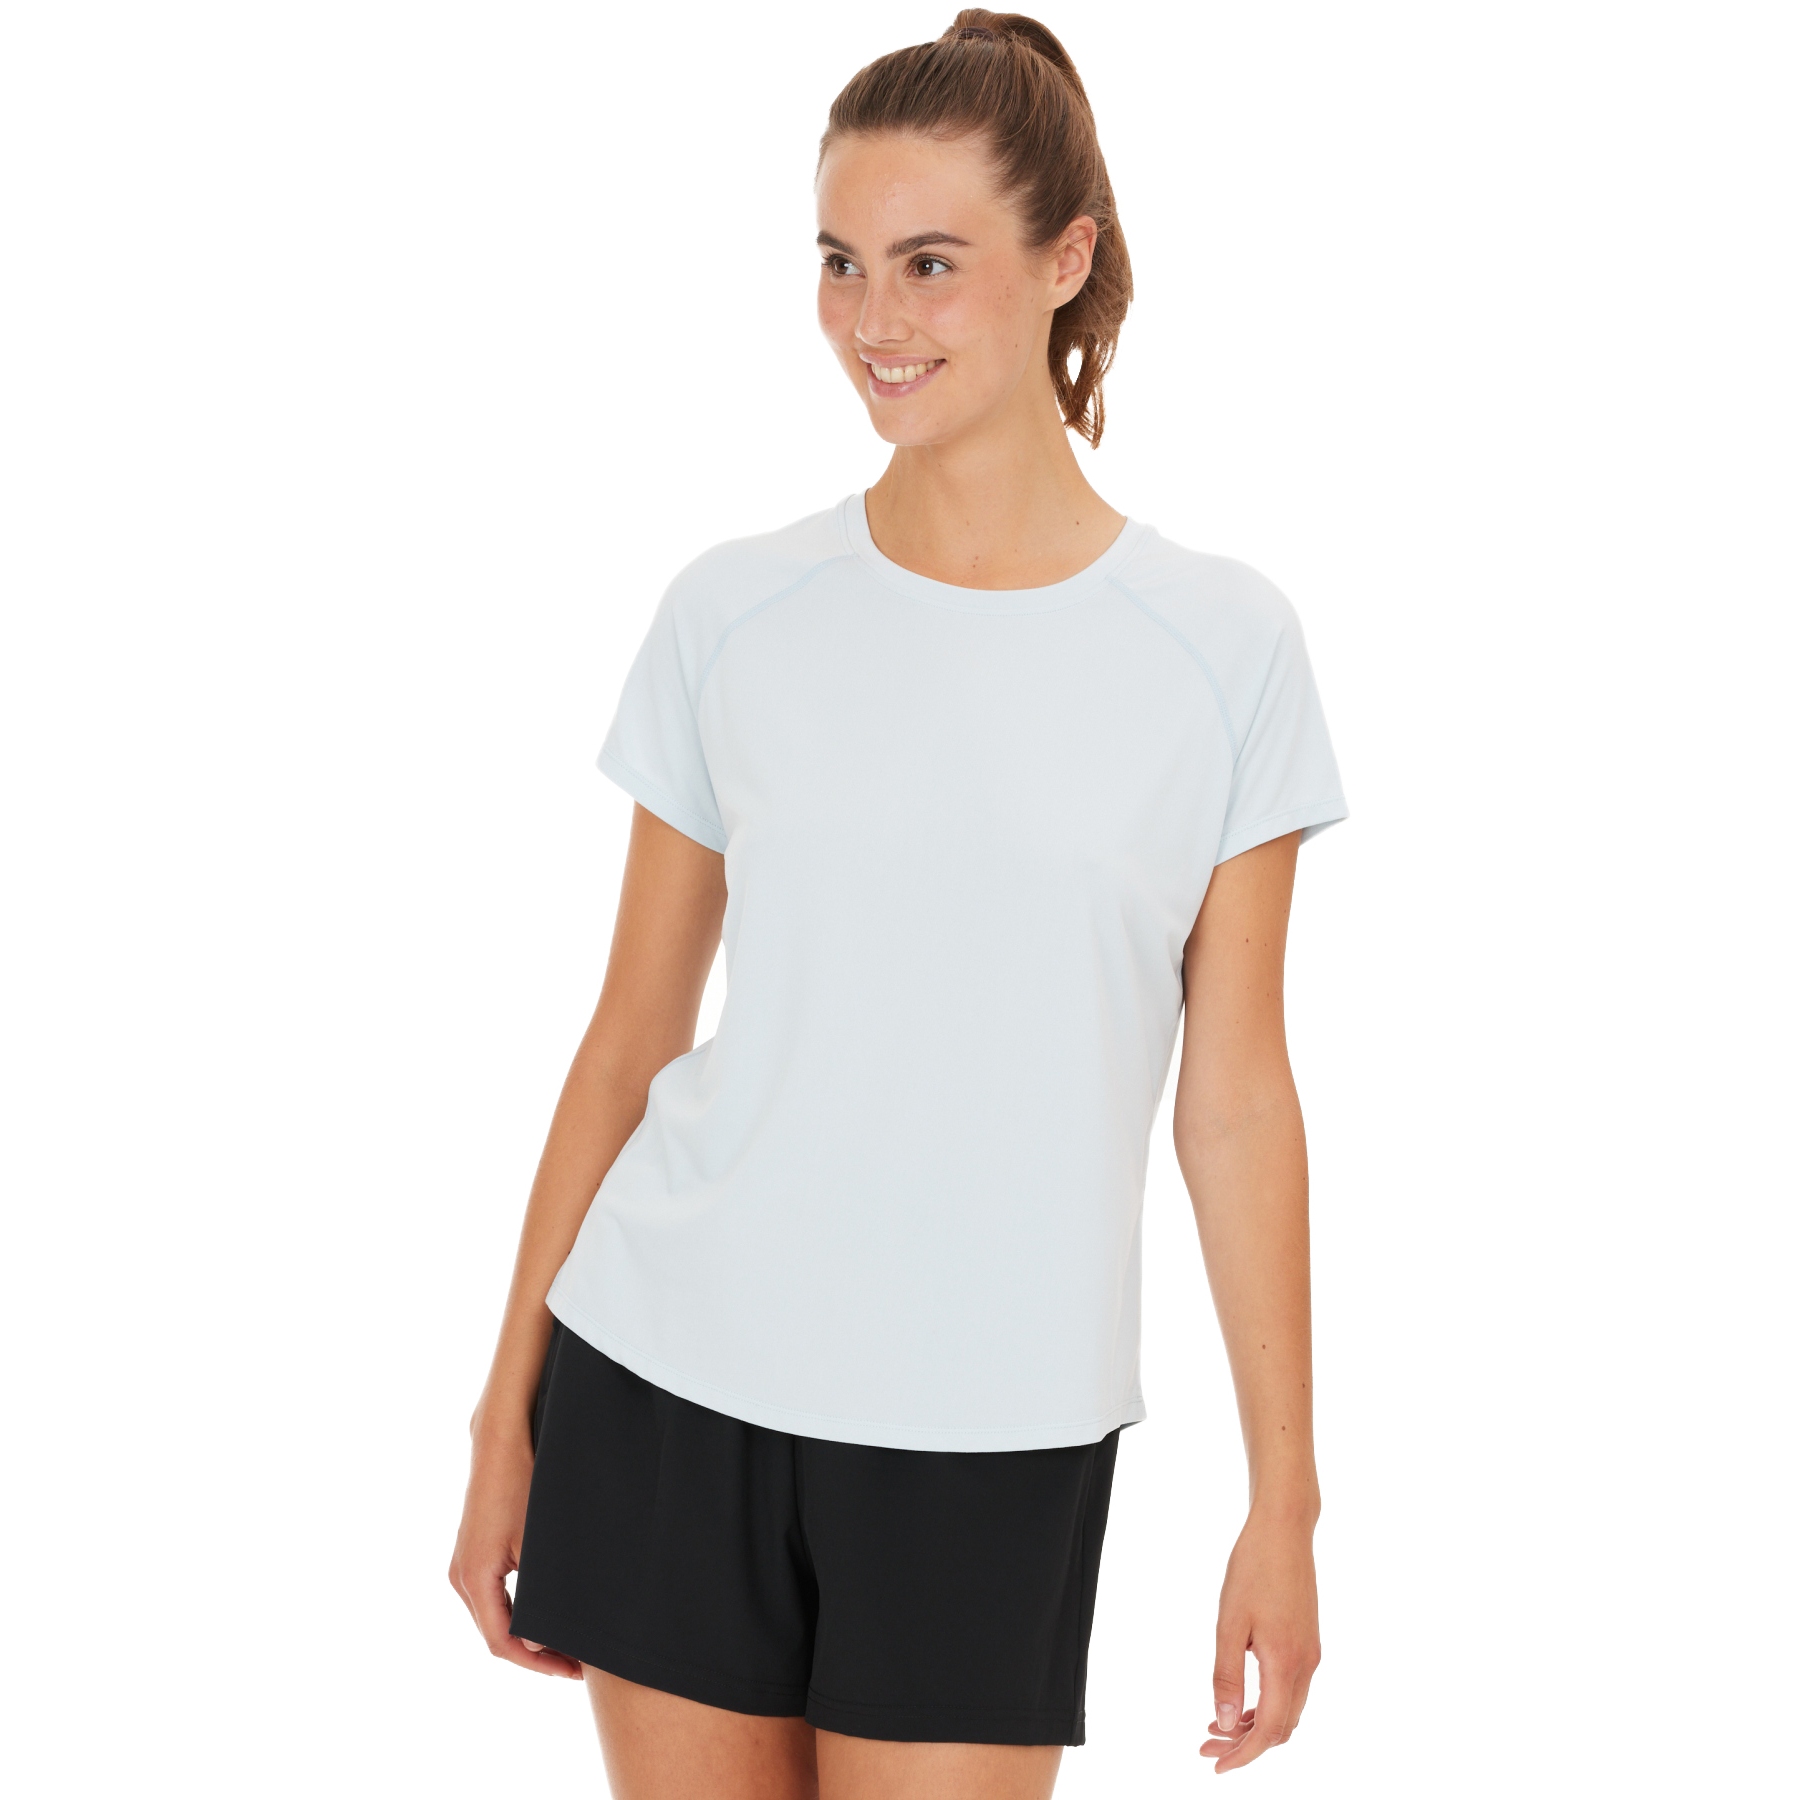 Produktbild von Athlecia Gaina T-Shirt Damen - Plein Air